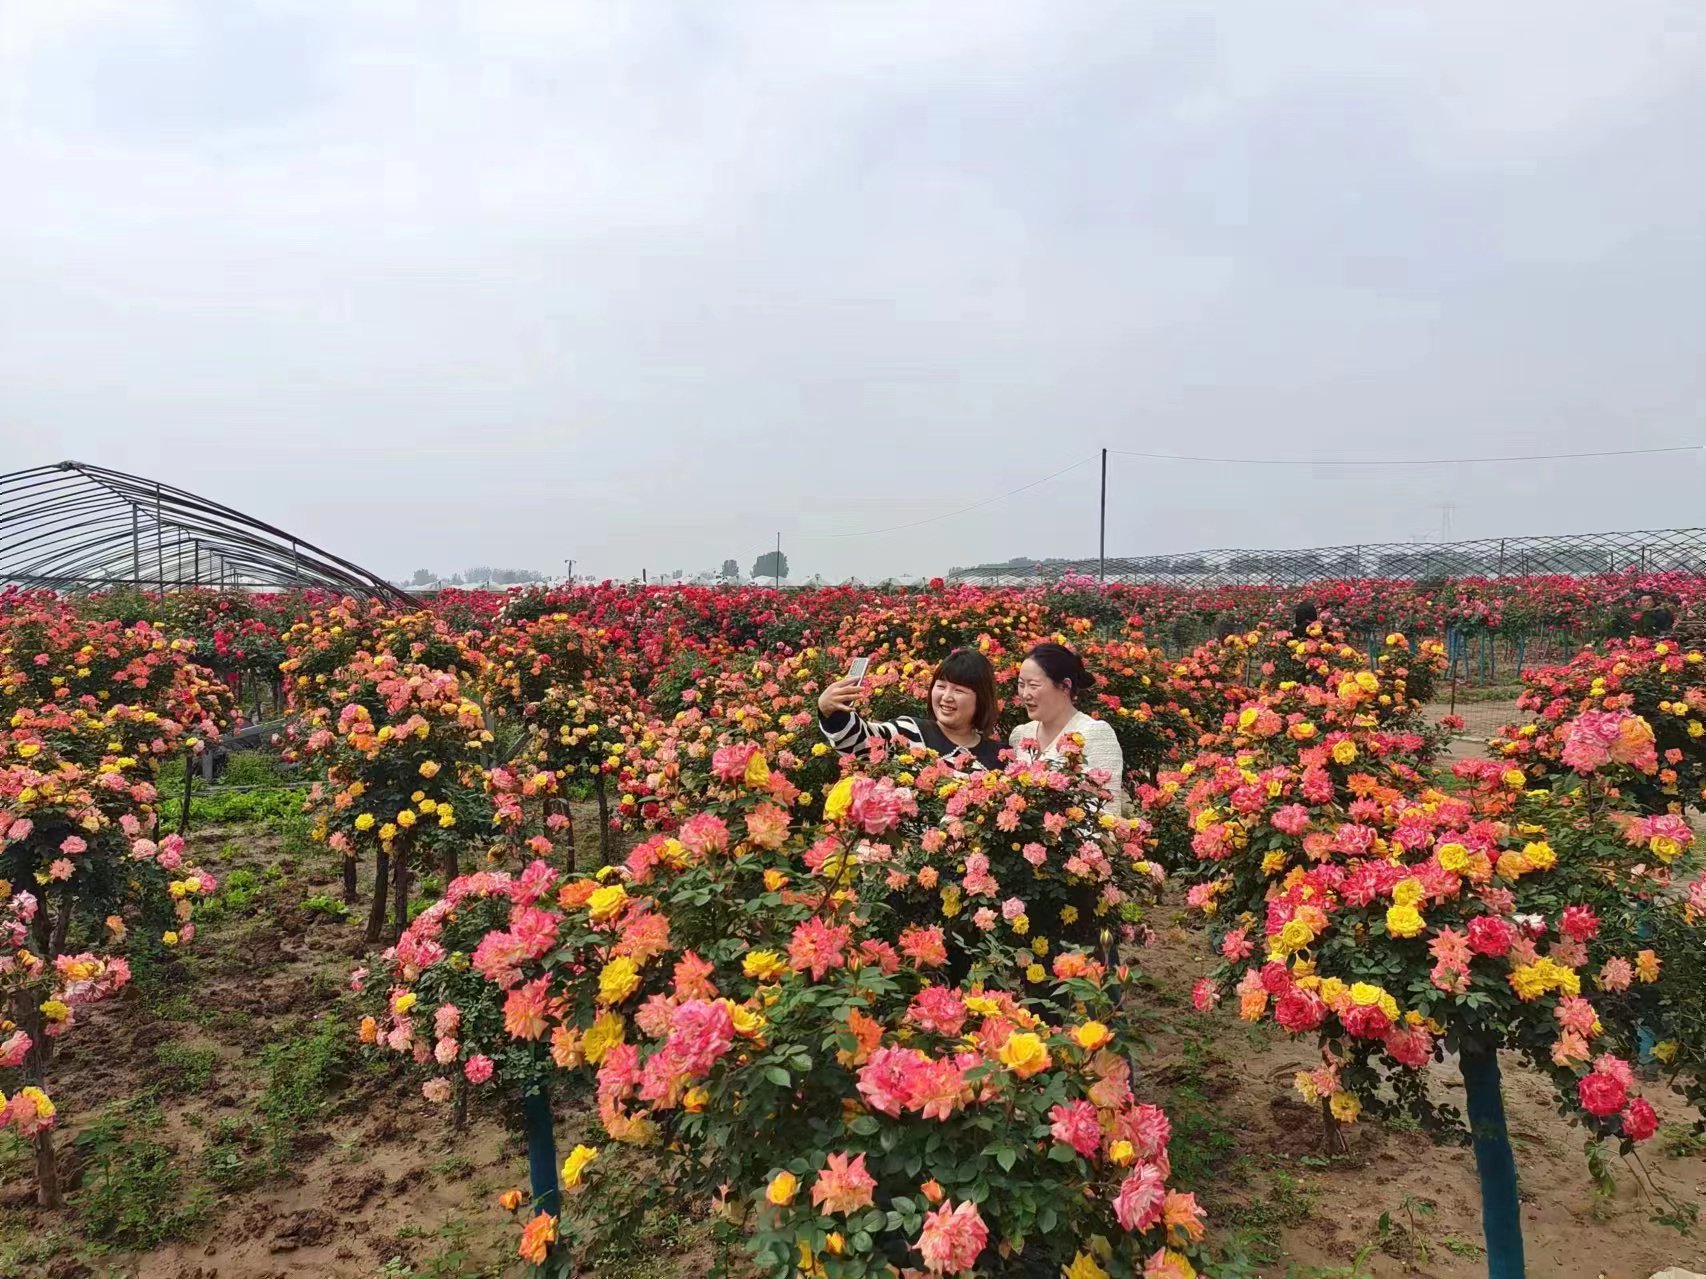 游客畅游万亩月季种植基地拍照留念。刘文举摄